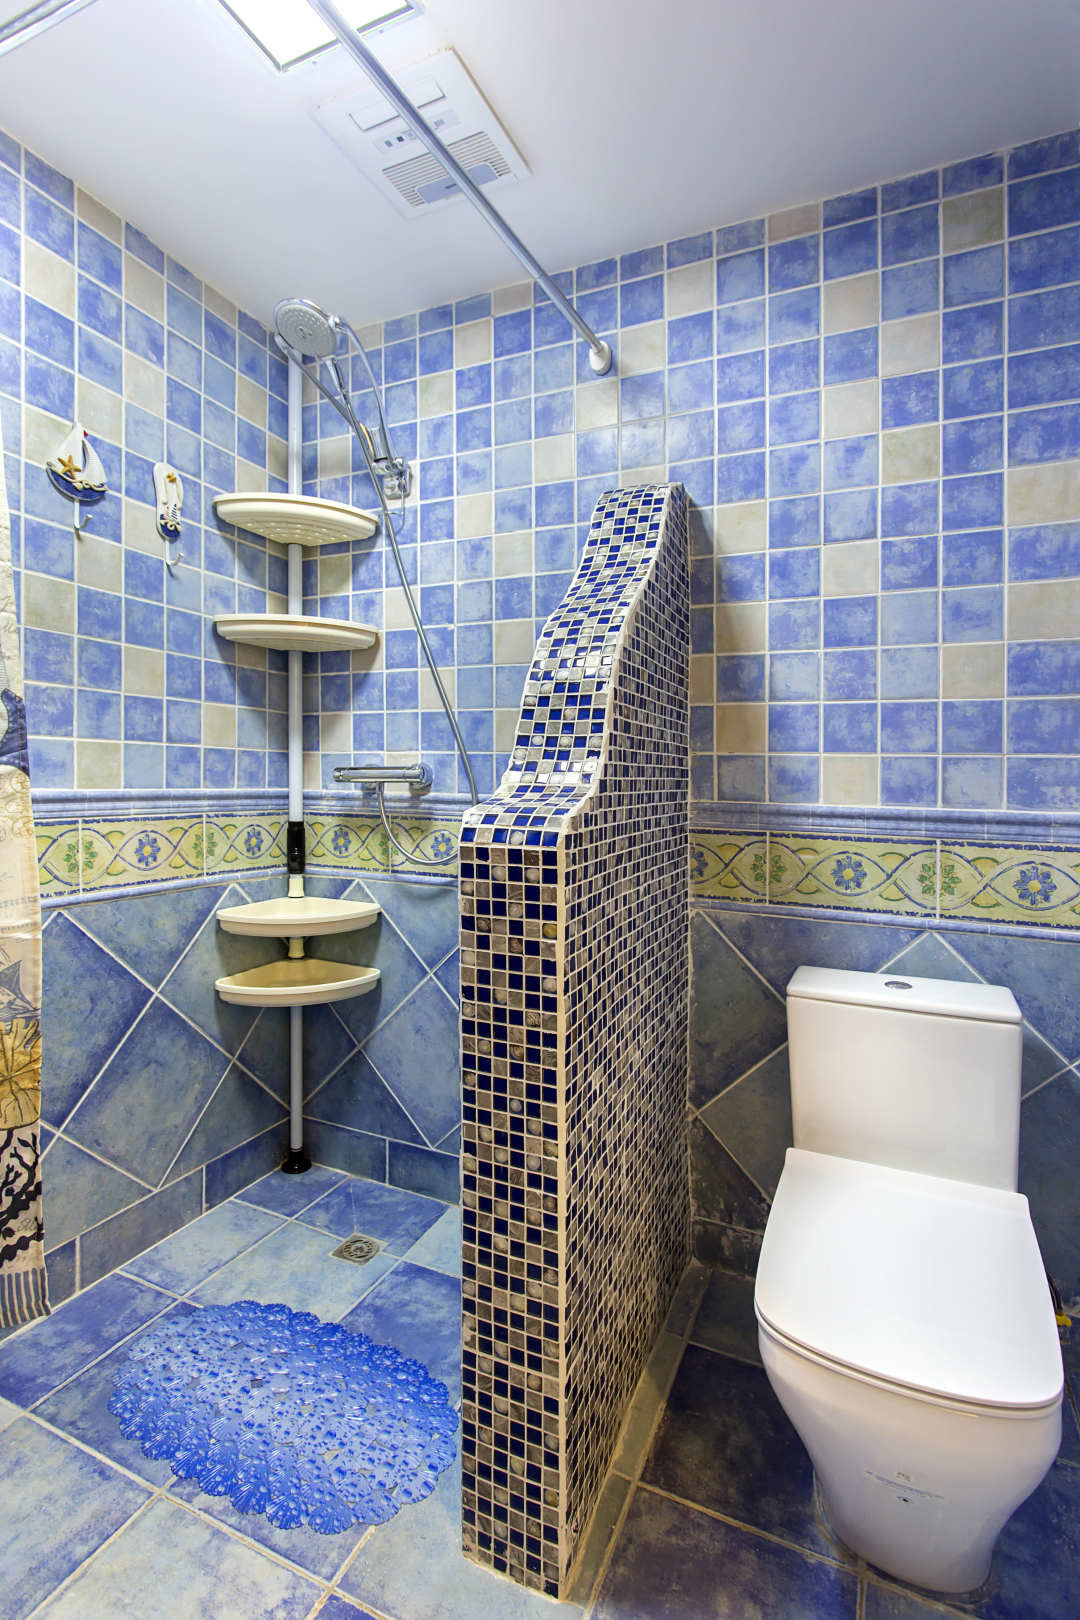 地中海风格三室一厅创意主卫生间洗手盆镜子仿古地砖装修图片 – 设计本装修效果图